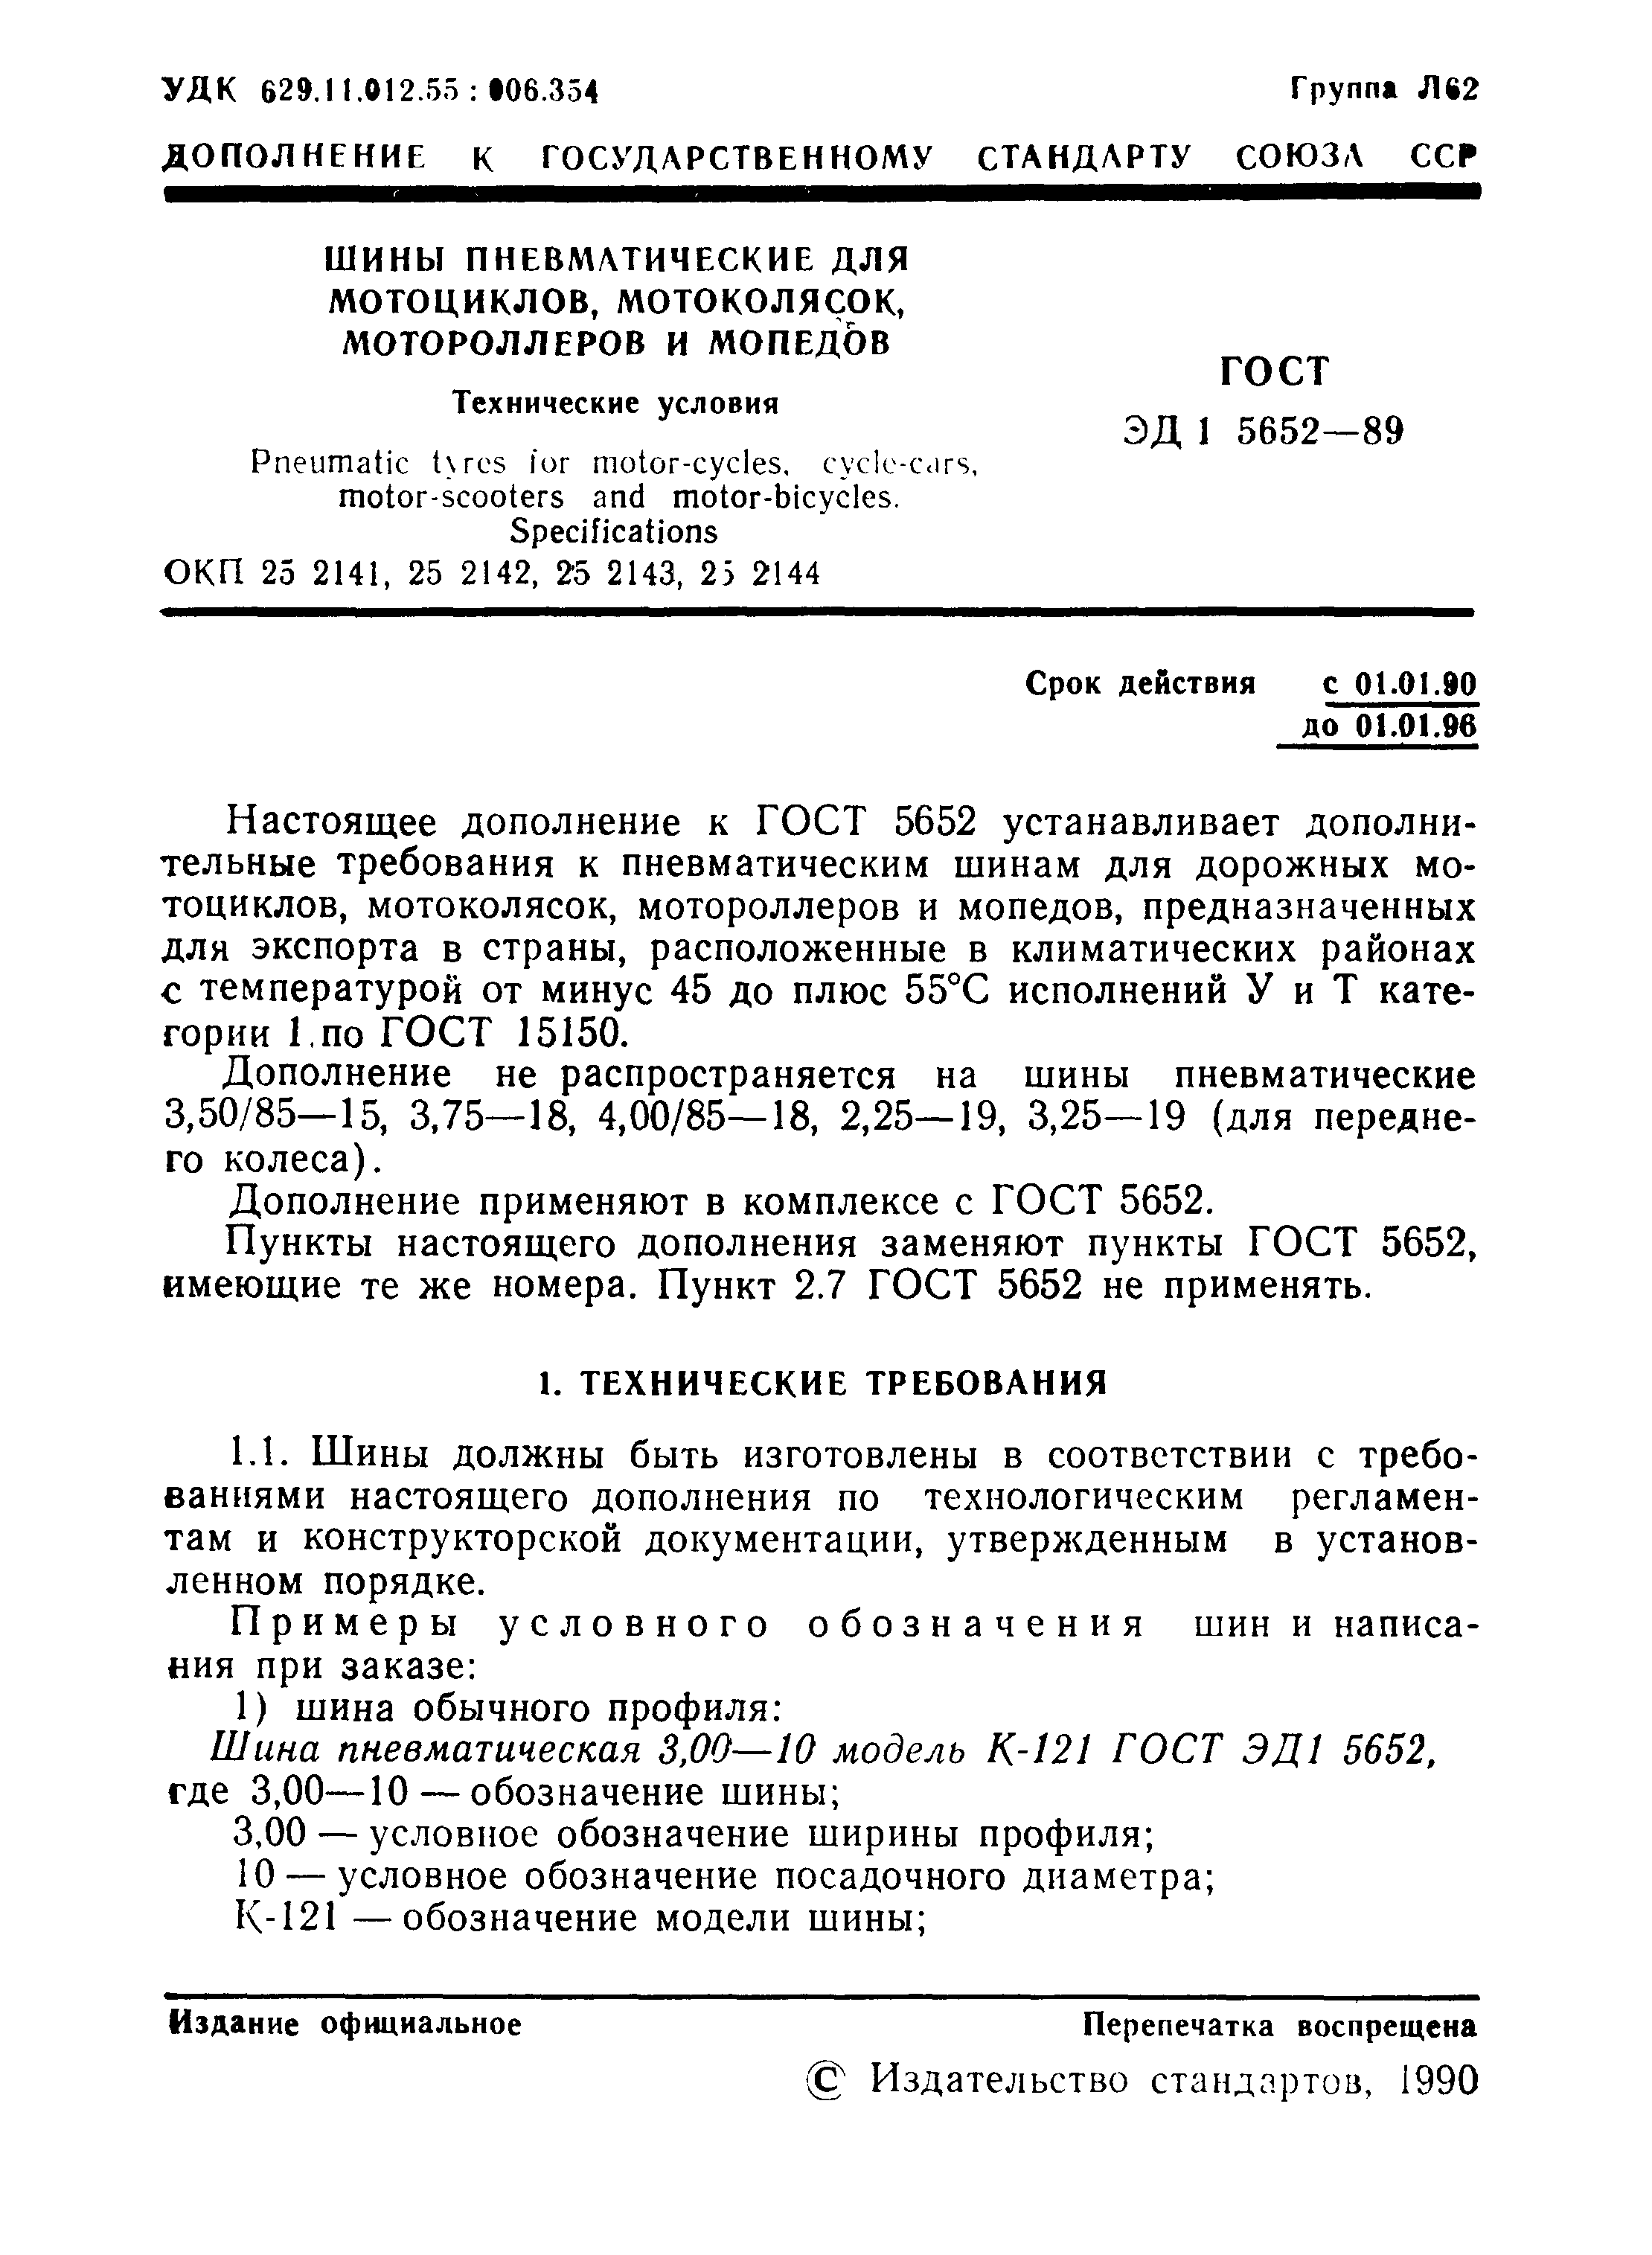 ГОСТ ЭД1 5652-89